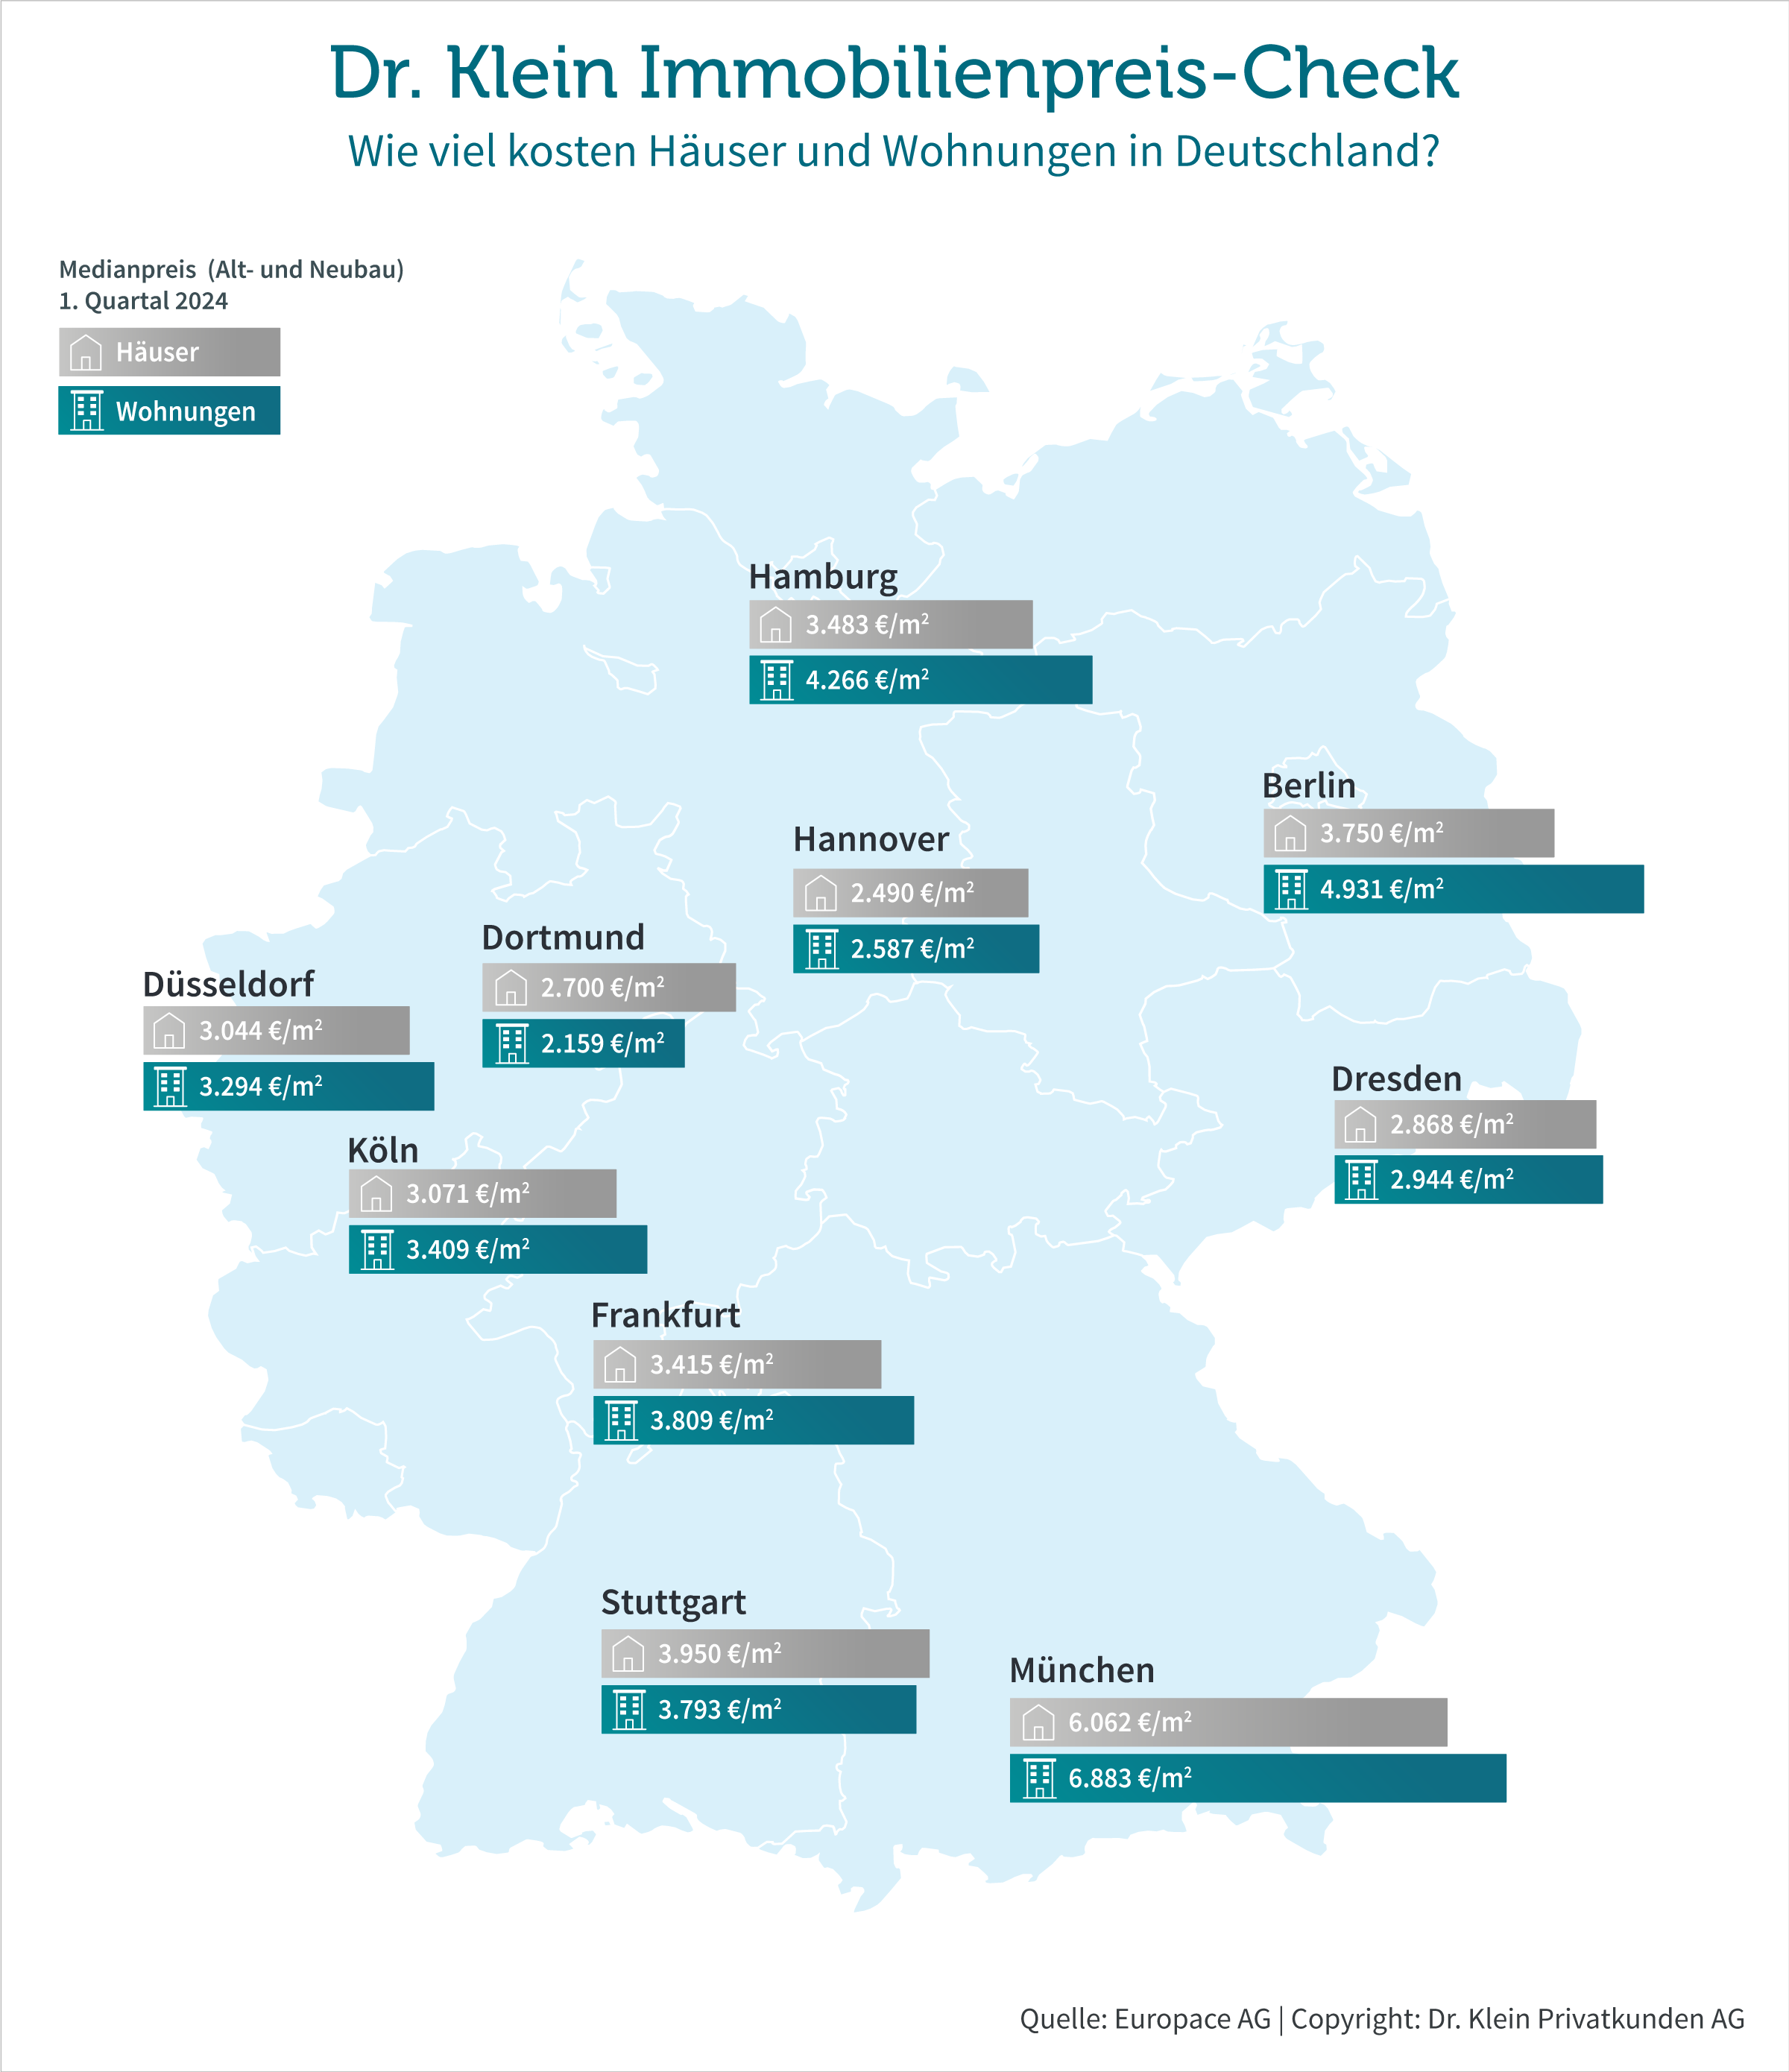 Medianpreise in den zehn untersuchten deutschen Großstädten Q1/2024